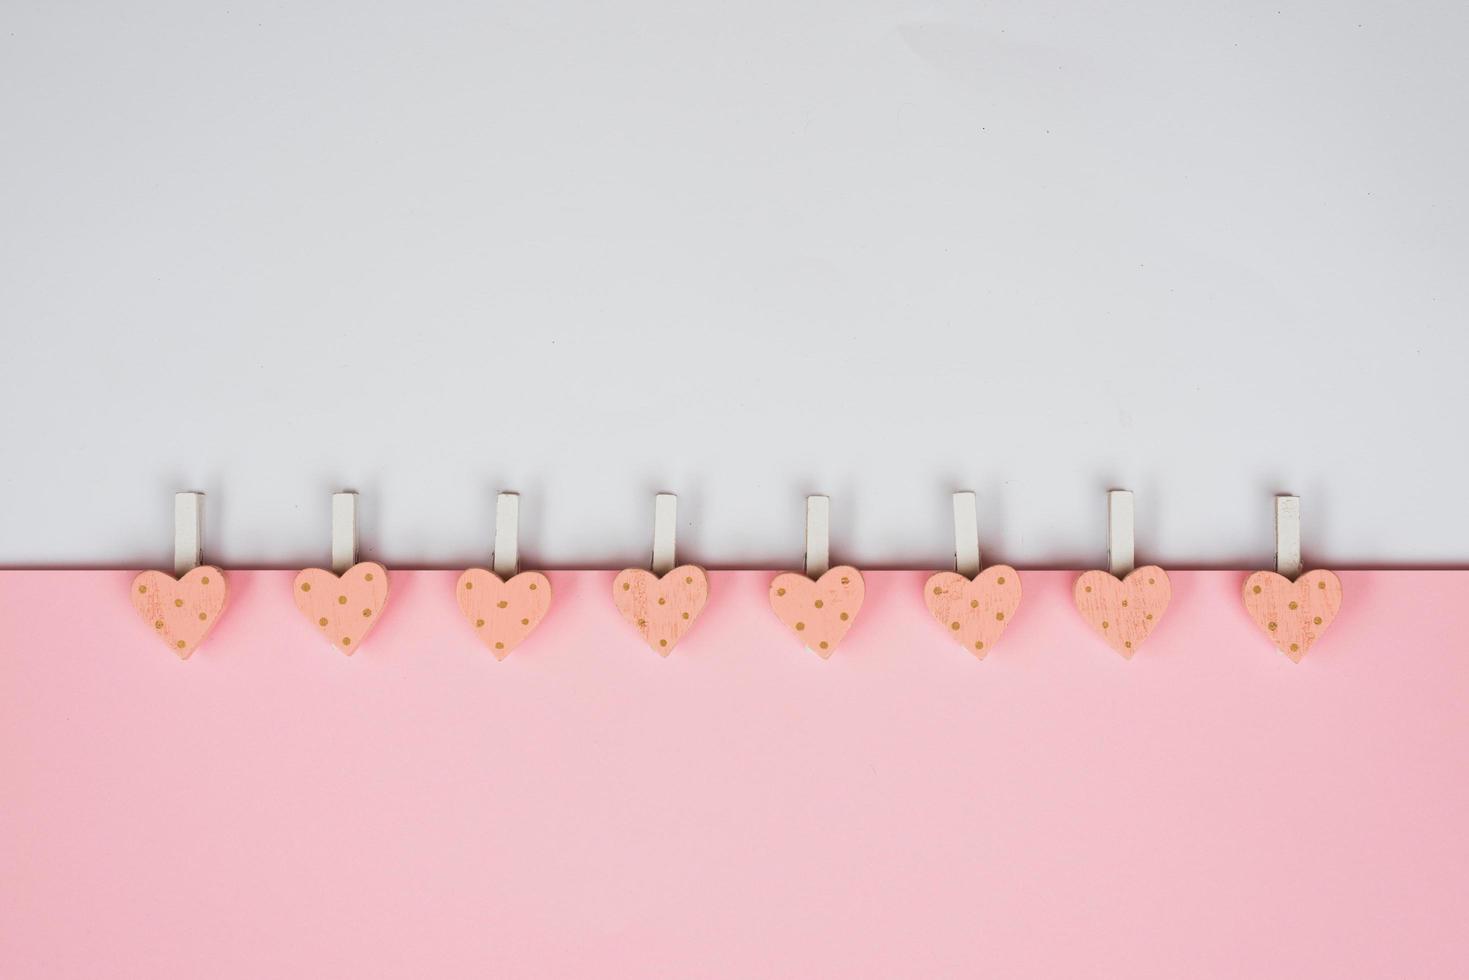 achtergrond voor Valentijnsdag vakantie. roze hartjes en wasknijpers op een delicate roze en witte achtergrond. Valentijnsdag concept. bovenaanzicht, plat gelegd foto